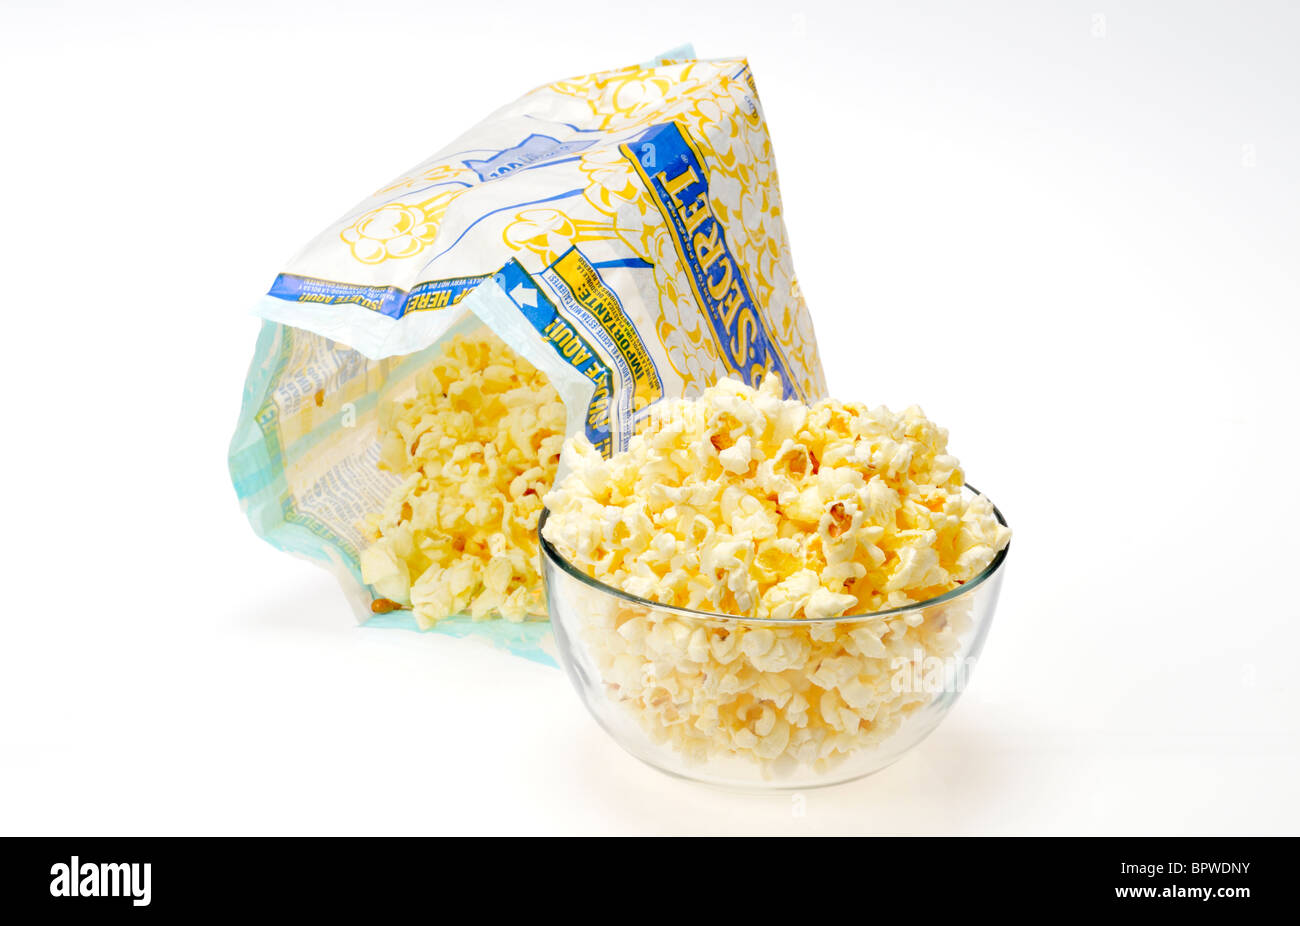 Beutel der Pop Secret Mikrowelle Popcorn mit etwas Popcorn in Glasschale auf weißem Hintergrund geöffnet, Ausschnitt. Stockfoto